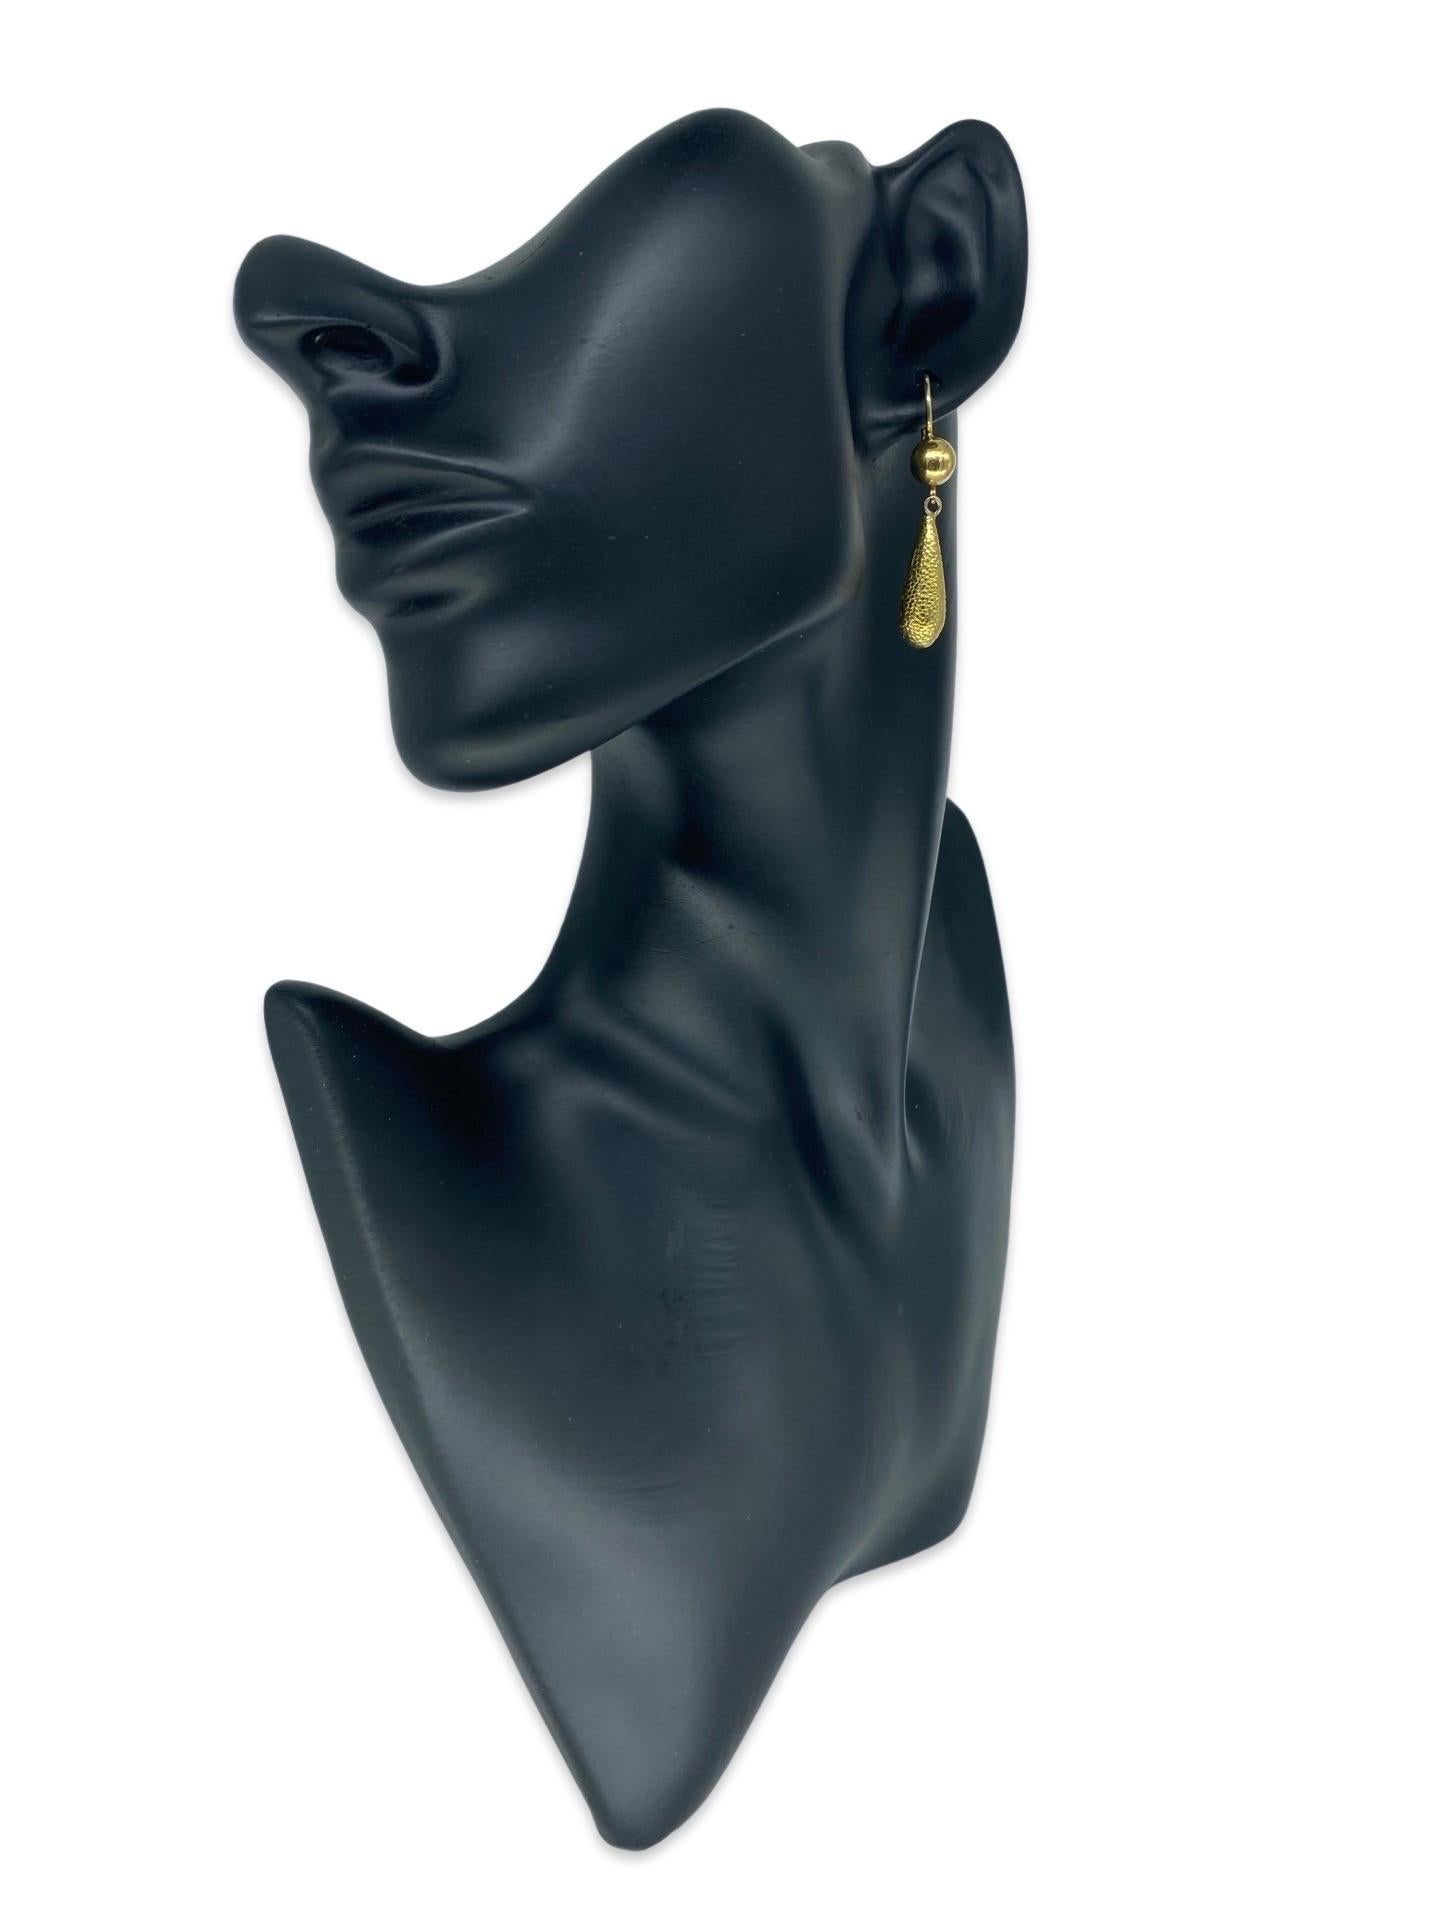 Vintage Designer gehämmert baumeln Drop Hebel zurück Ohrringe 18k Gold Italien. Die Ohrringe messen 32 mm in der Höhe. Die Ohrringe wiegen 7,4 g.